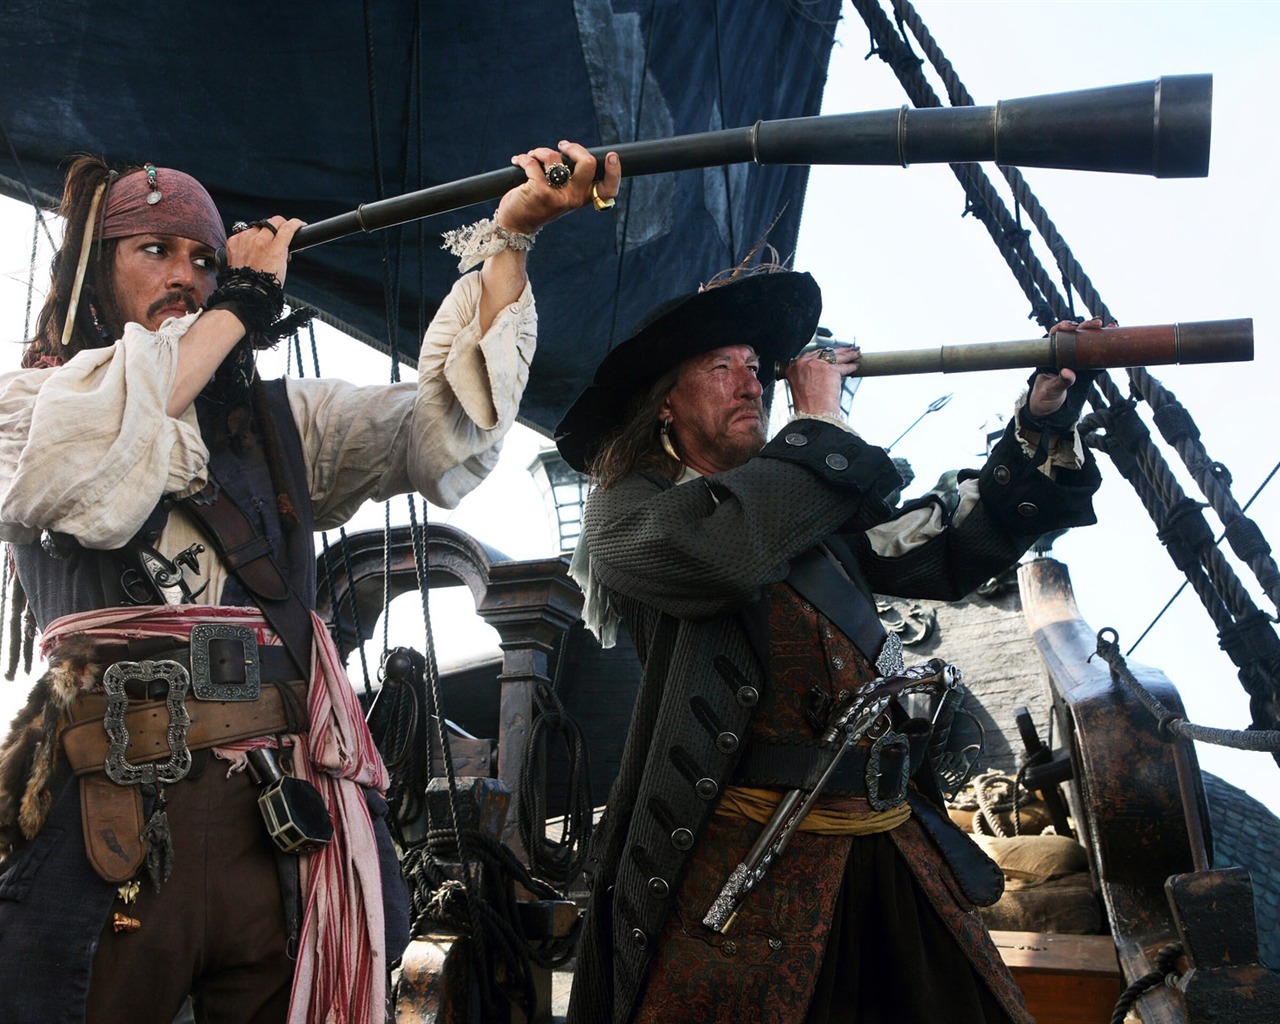 Fondos de Piratas del Caribe 3 HD #7 - 1280x1024